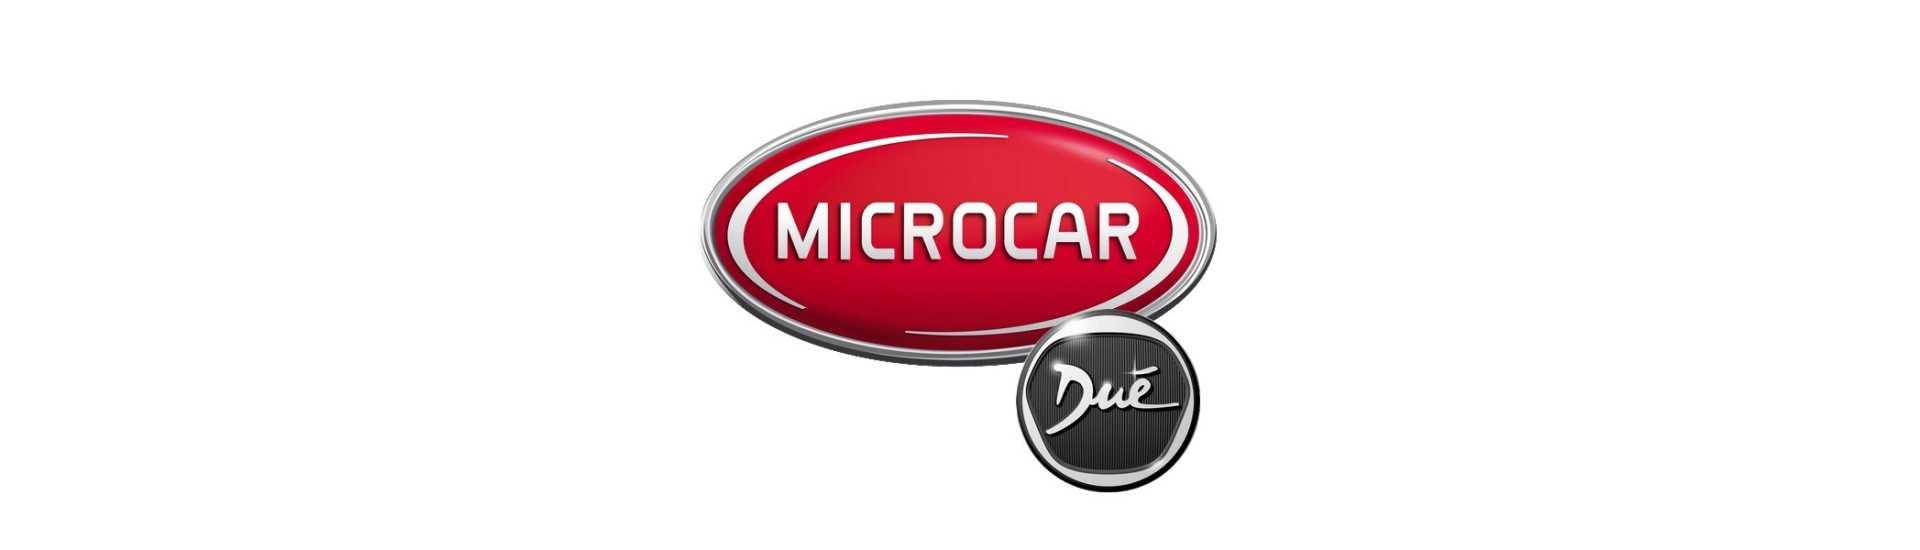 Antibroiler zum besten Preis für Auto ohne Lizenz Microcar Dué